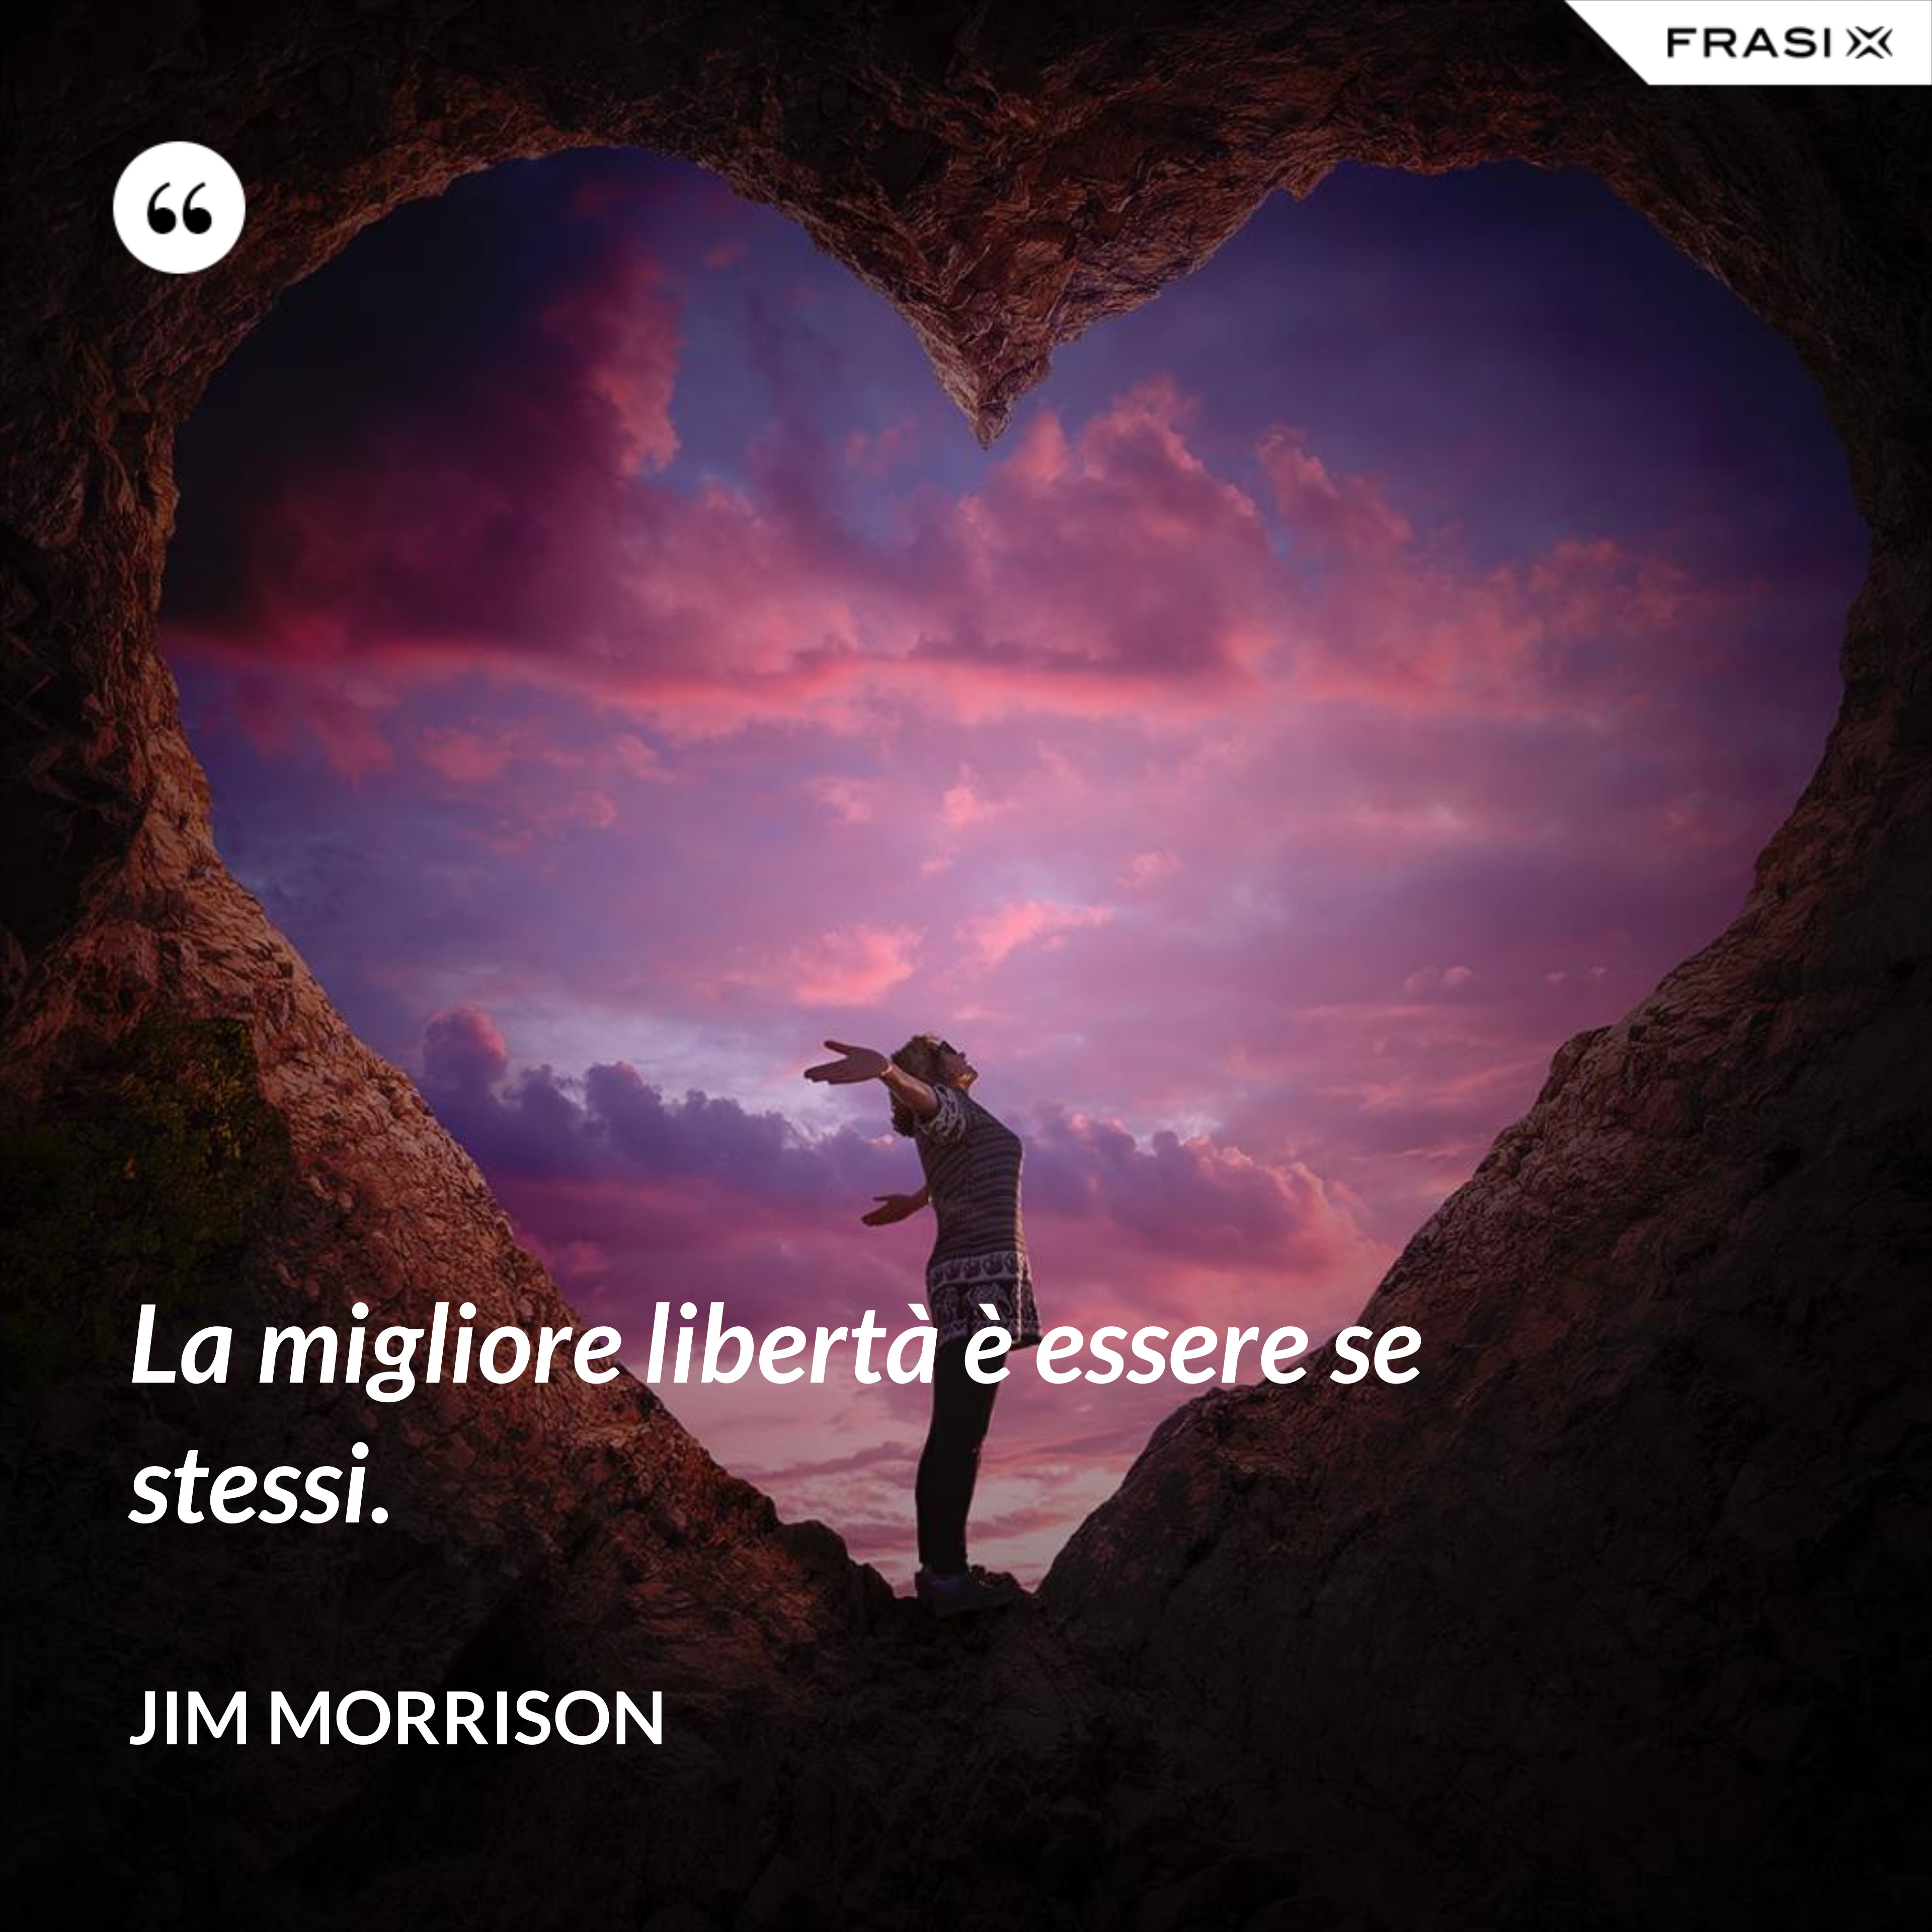 La migliore libertà è essere se stessi. - Jim Morrison